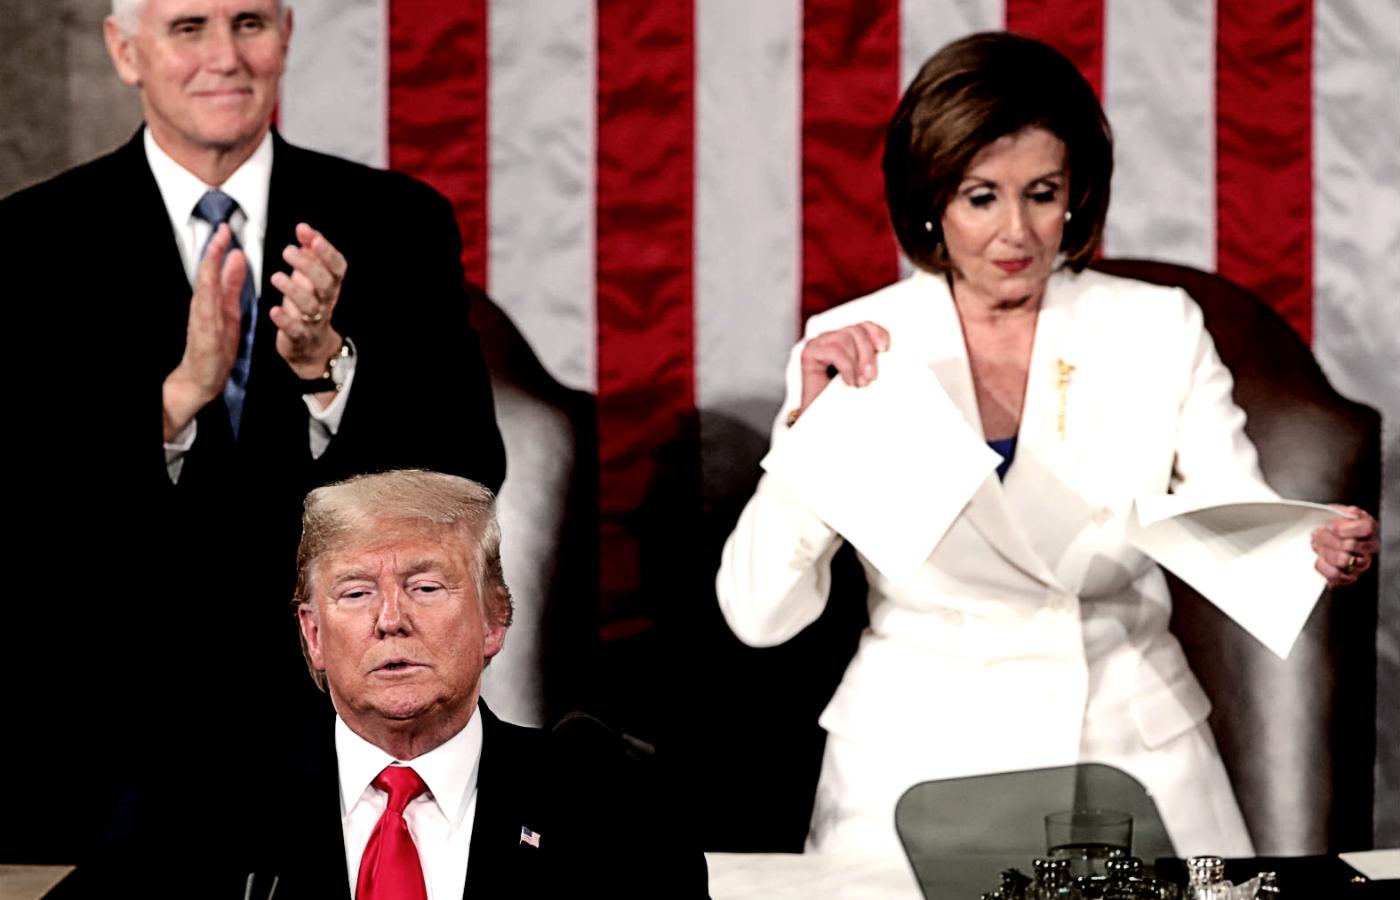 Demokratyczna przewodnicząca Izby Reprezentantów Nancy Pelosi podarła kopię przemówienia Donalda Trumpa.